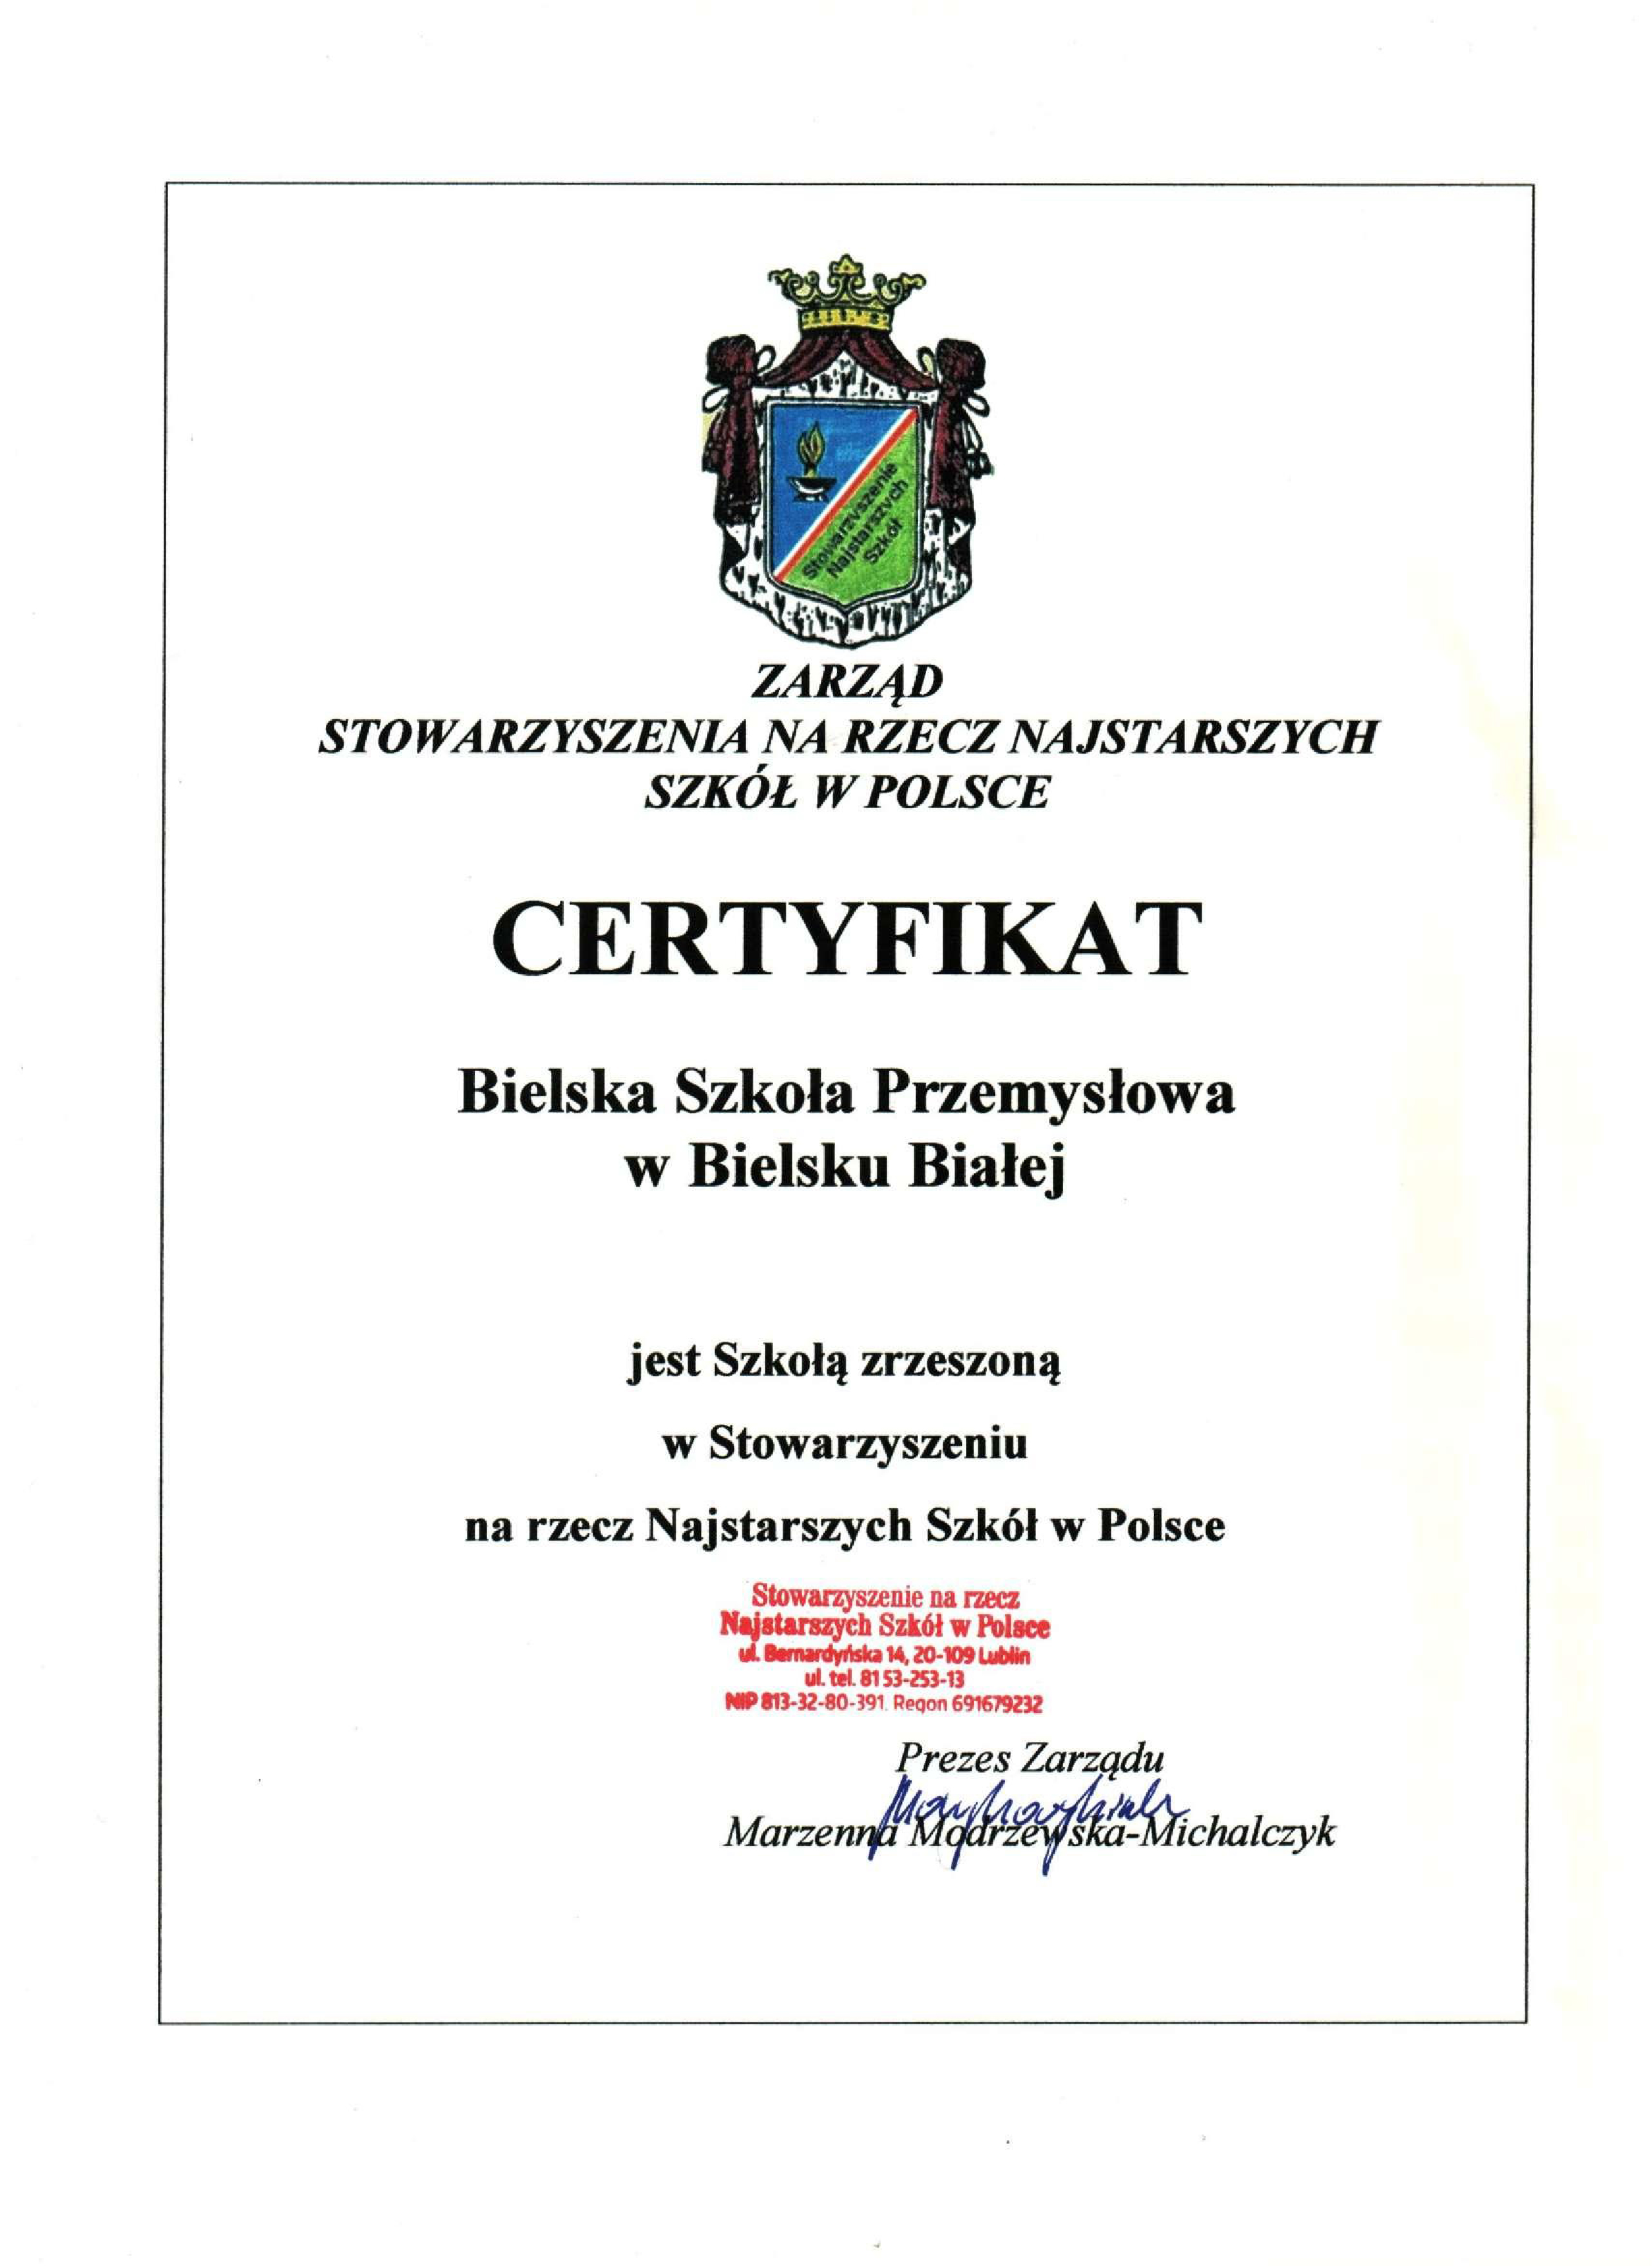 bsp_certyfikat_300